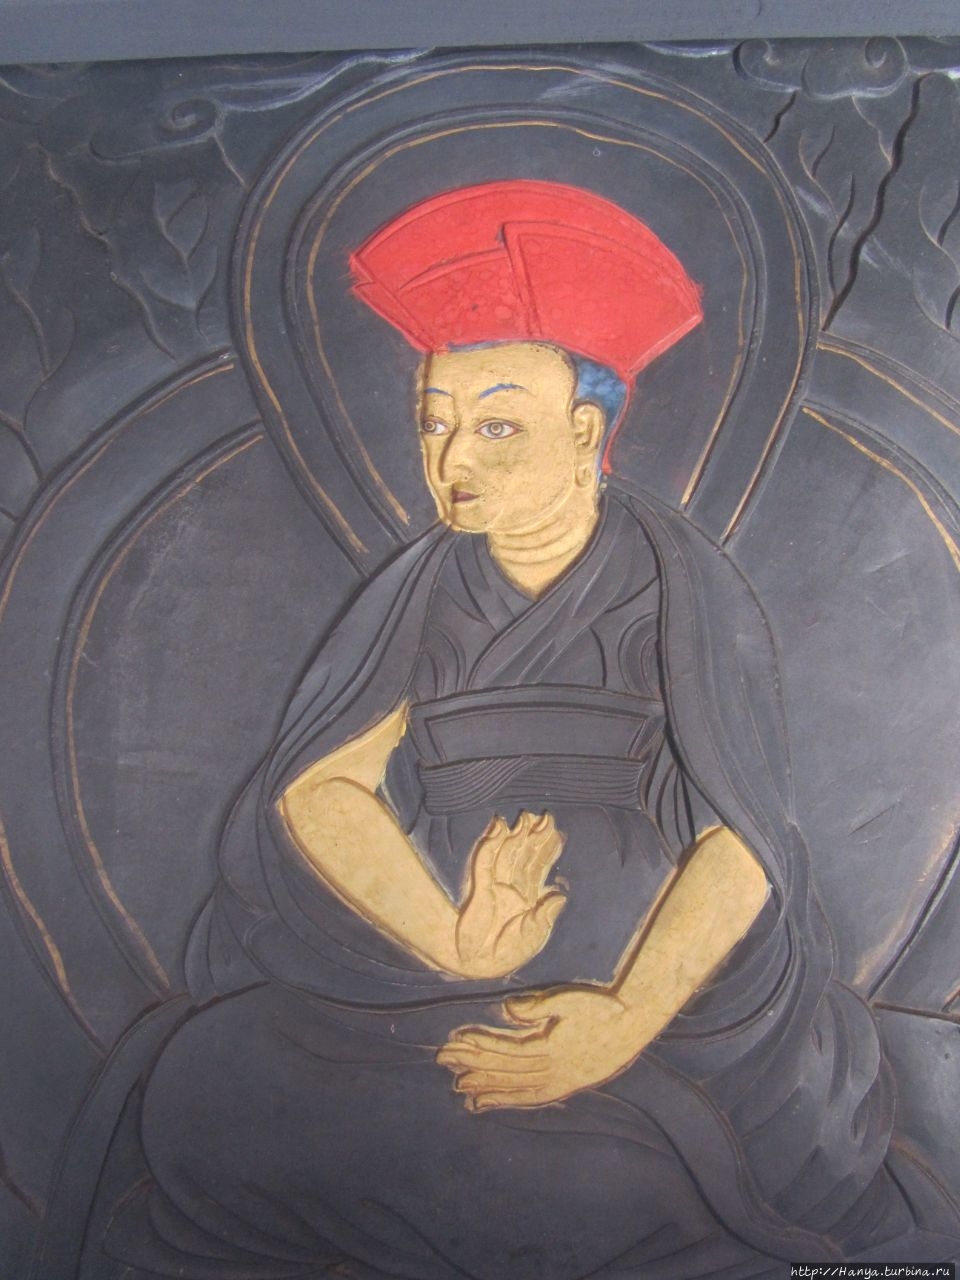 Дзонг Симтока Тхимпху, Бутан